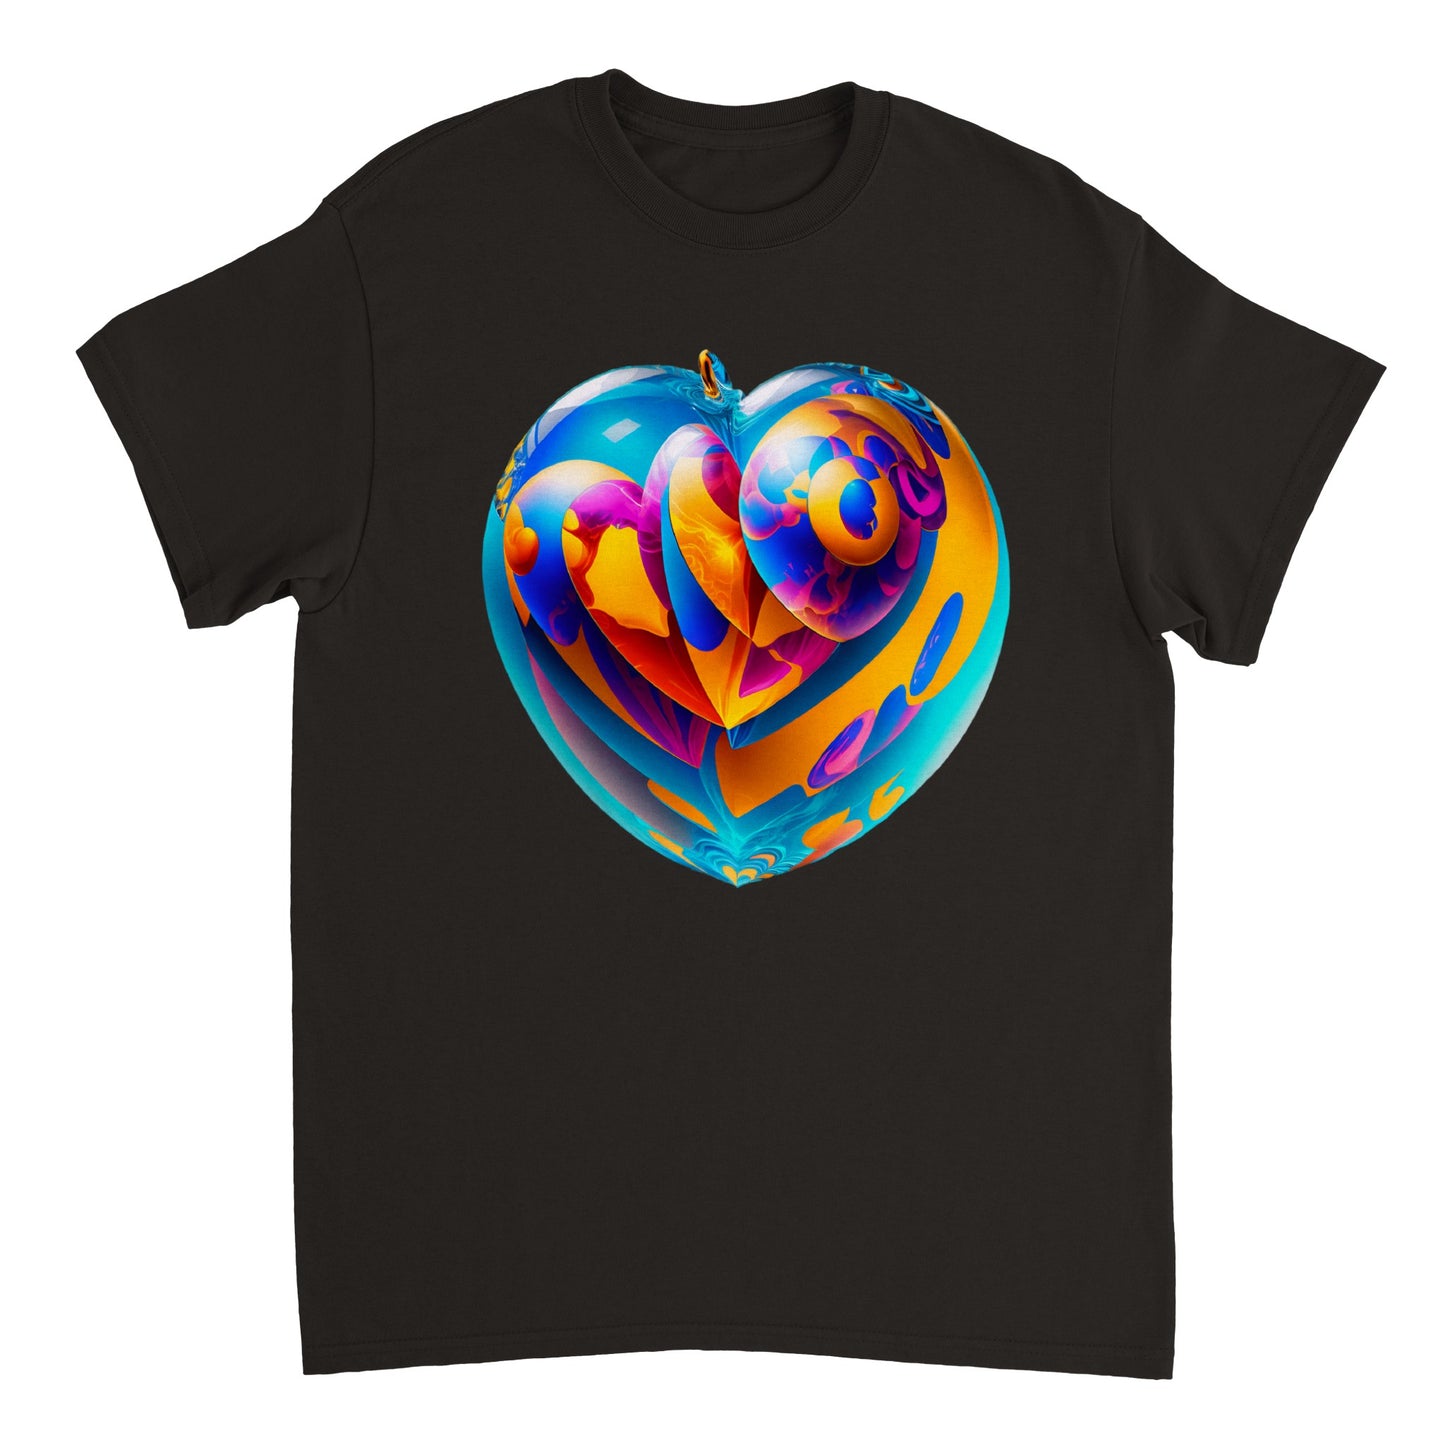 Love Heart - Heavyweight Unisex Crewneck T-shirt 17